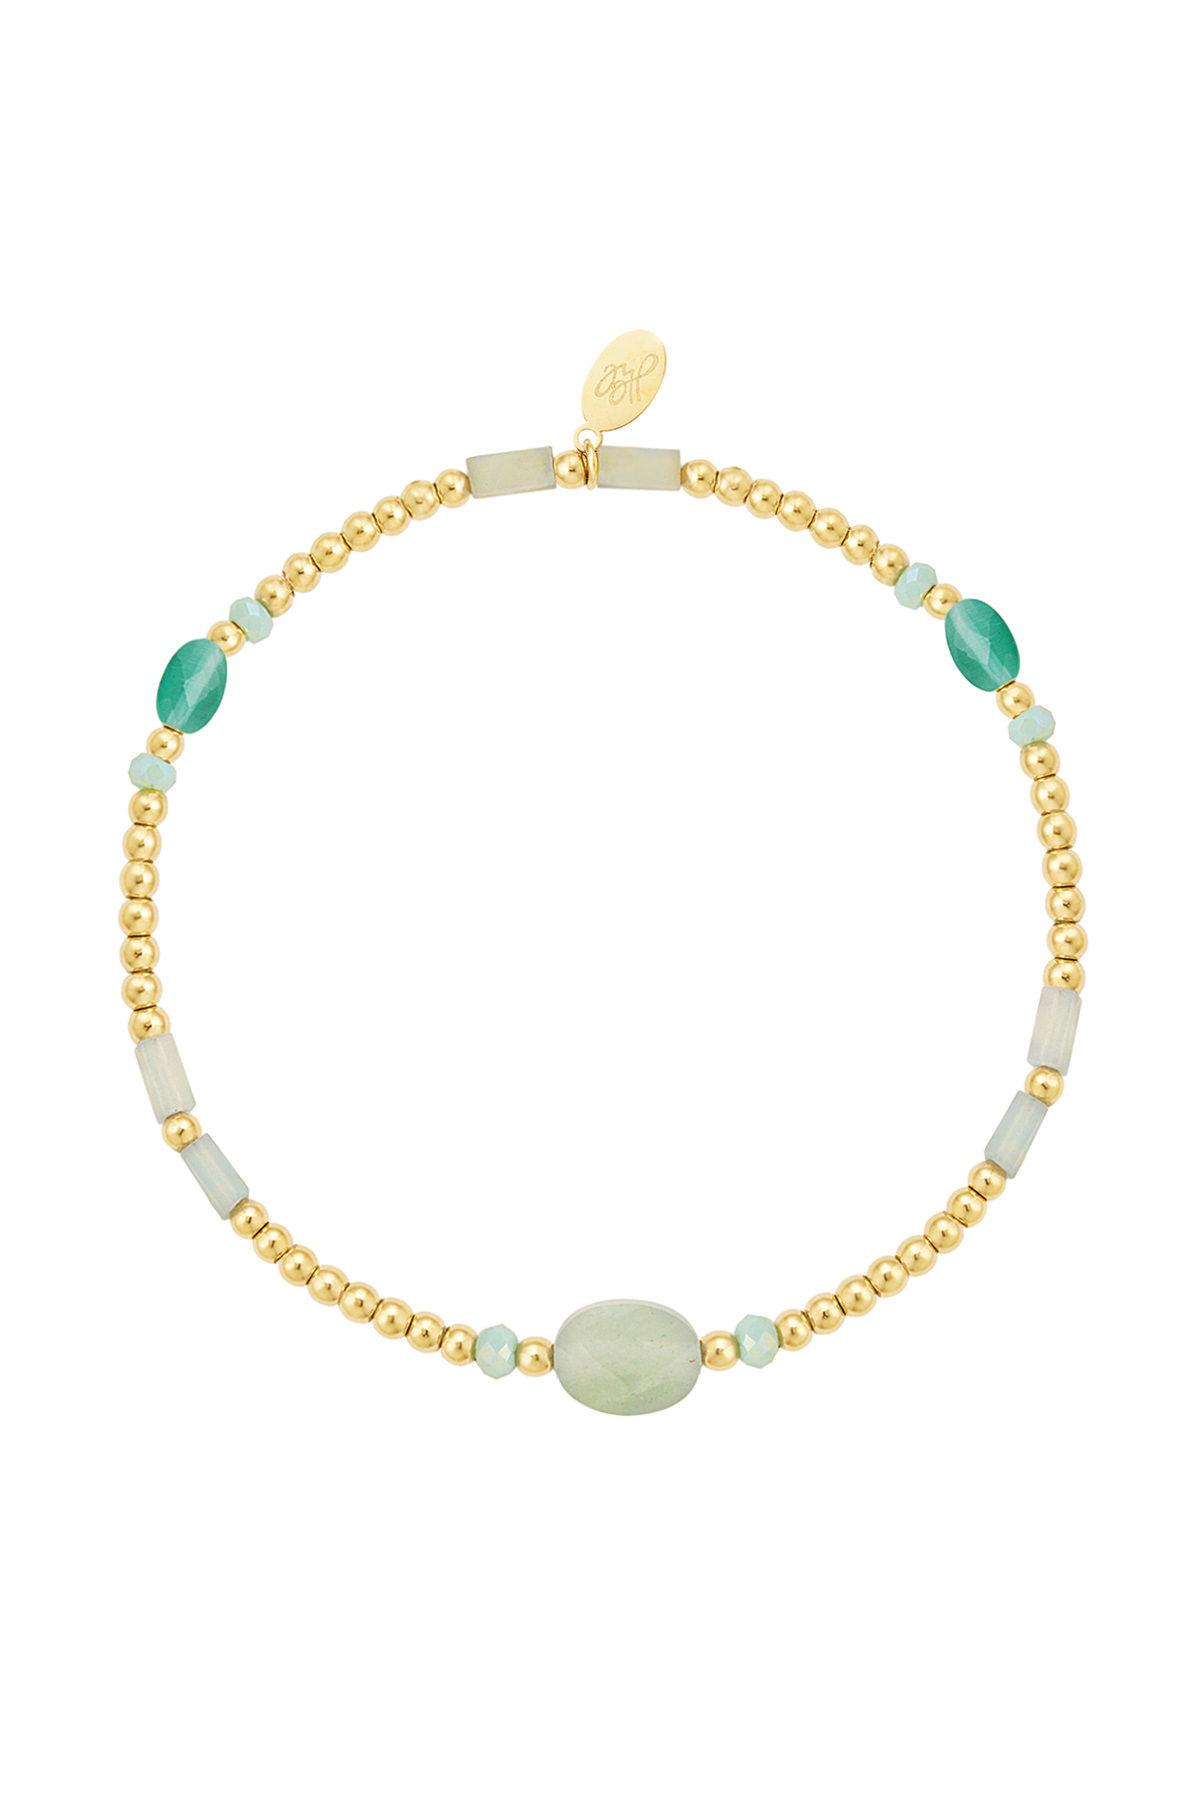 Perlenarmband mit bunten Details - grüner und goldener Edelstahl